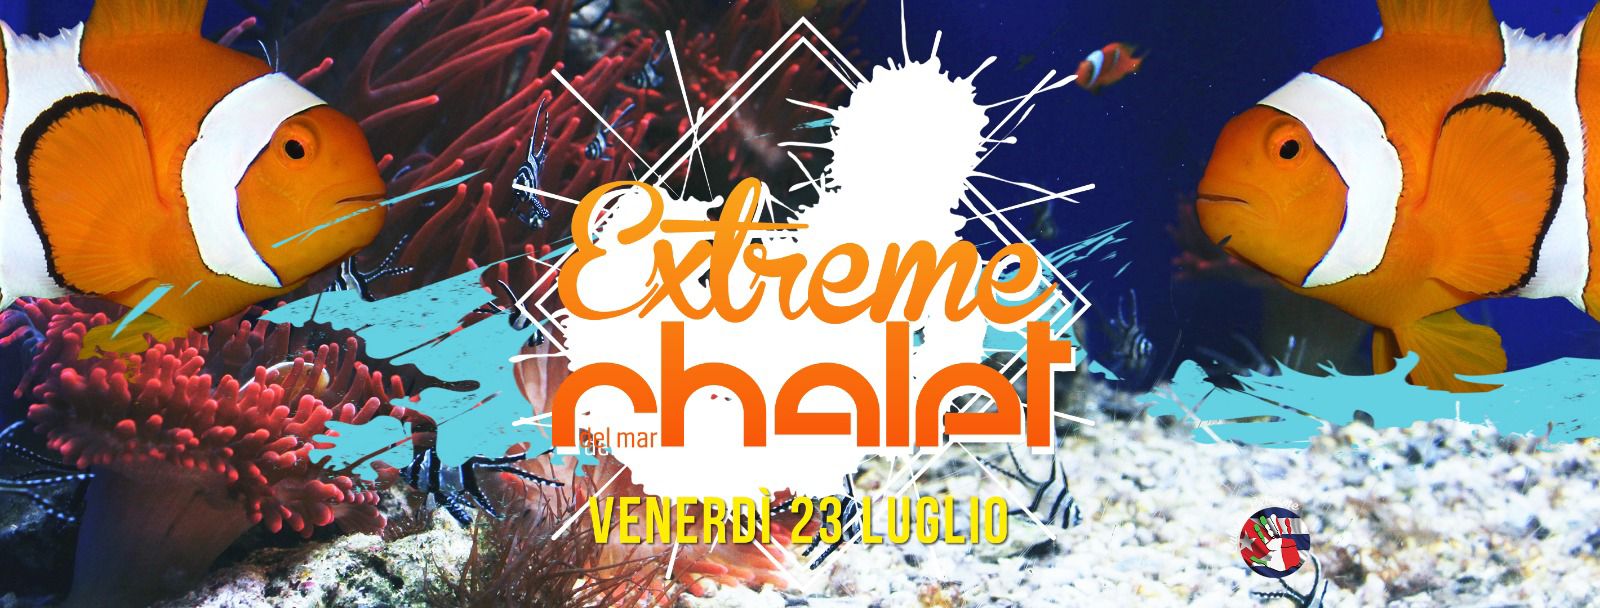 Aperitivo, cena e dopocena con Extreme, Chalet Del Mar